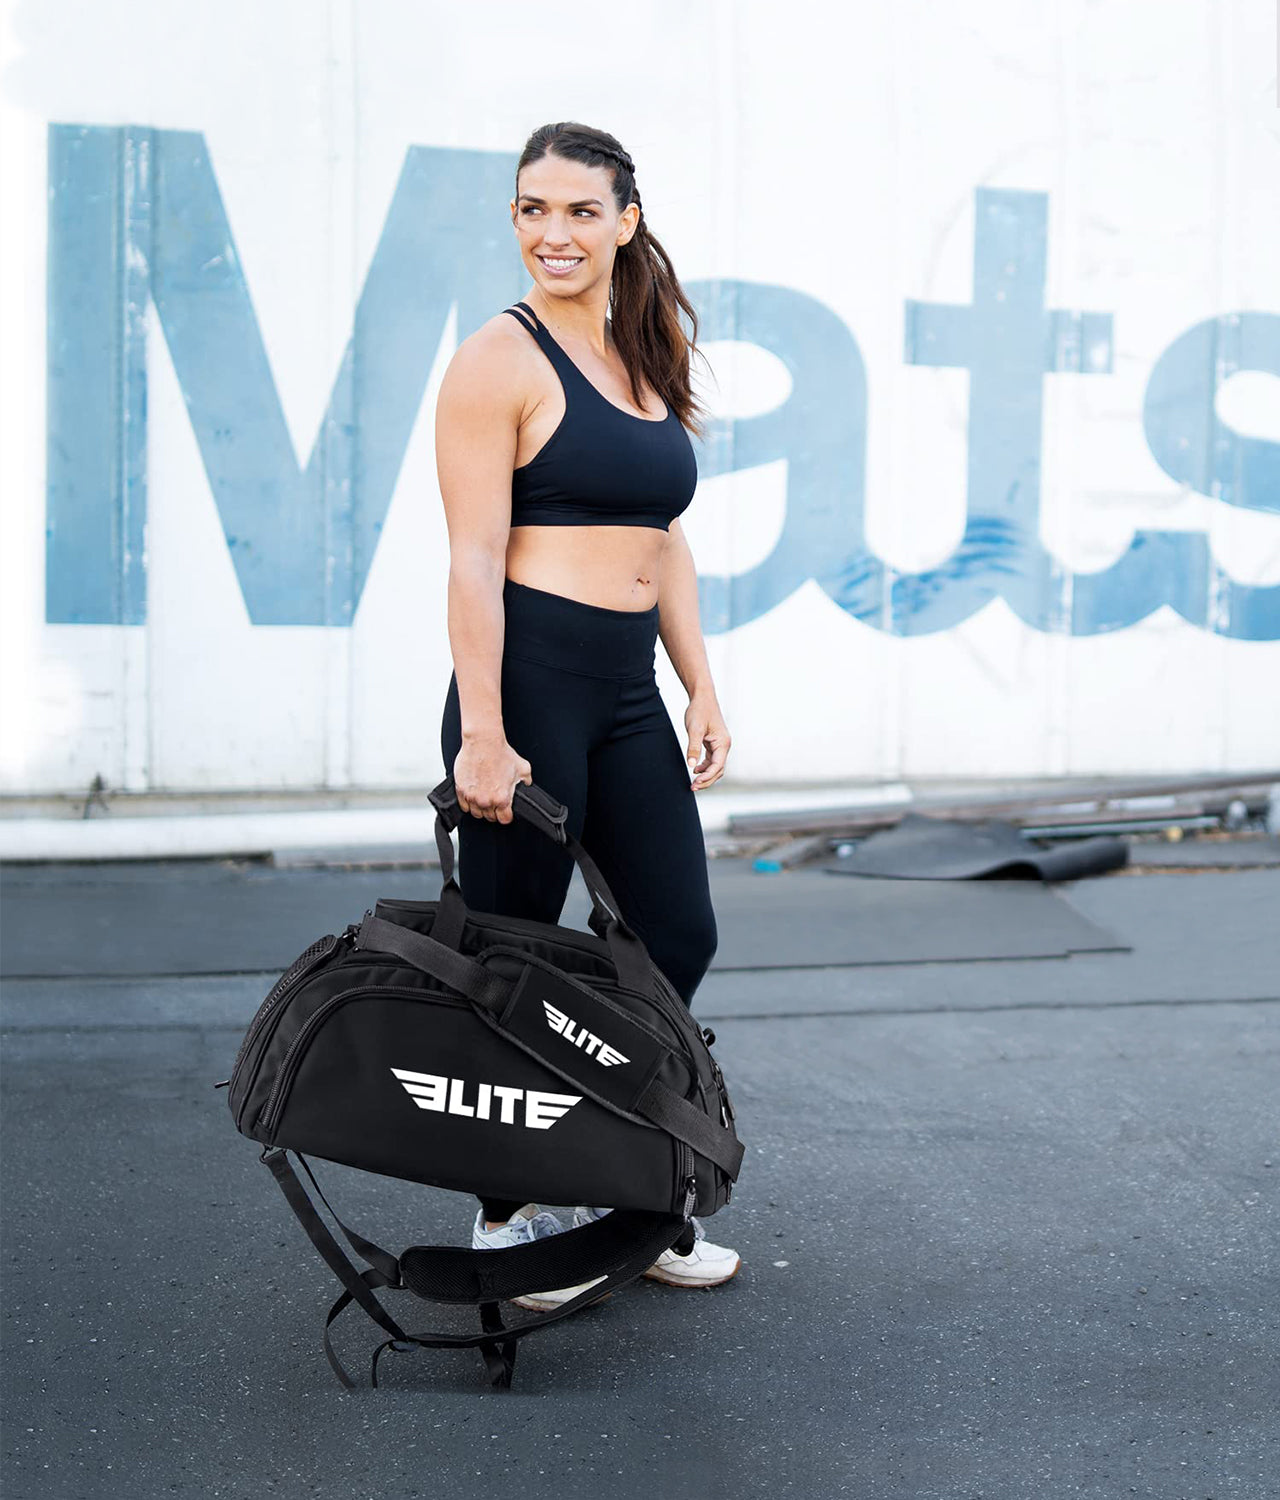 Elite Sports Warrior Black Large Duffel Muay Thai Gear Gym Bag